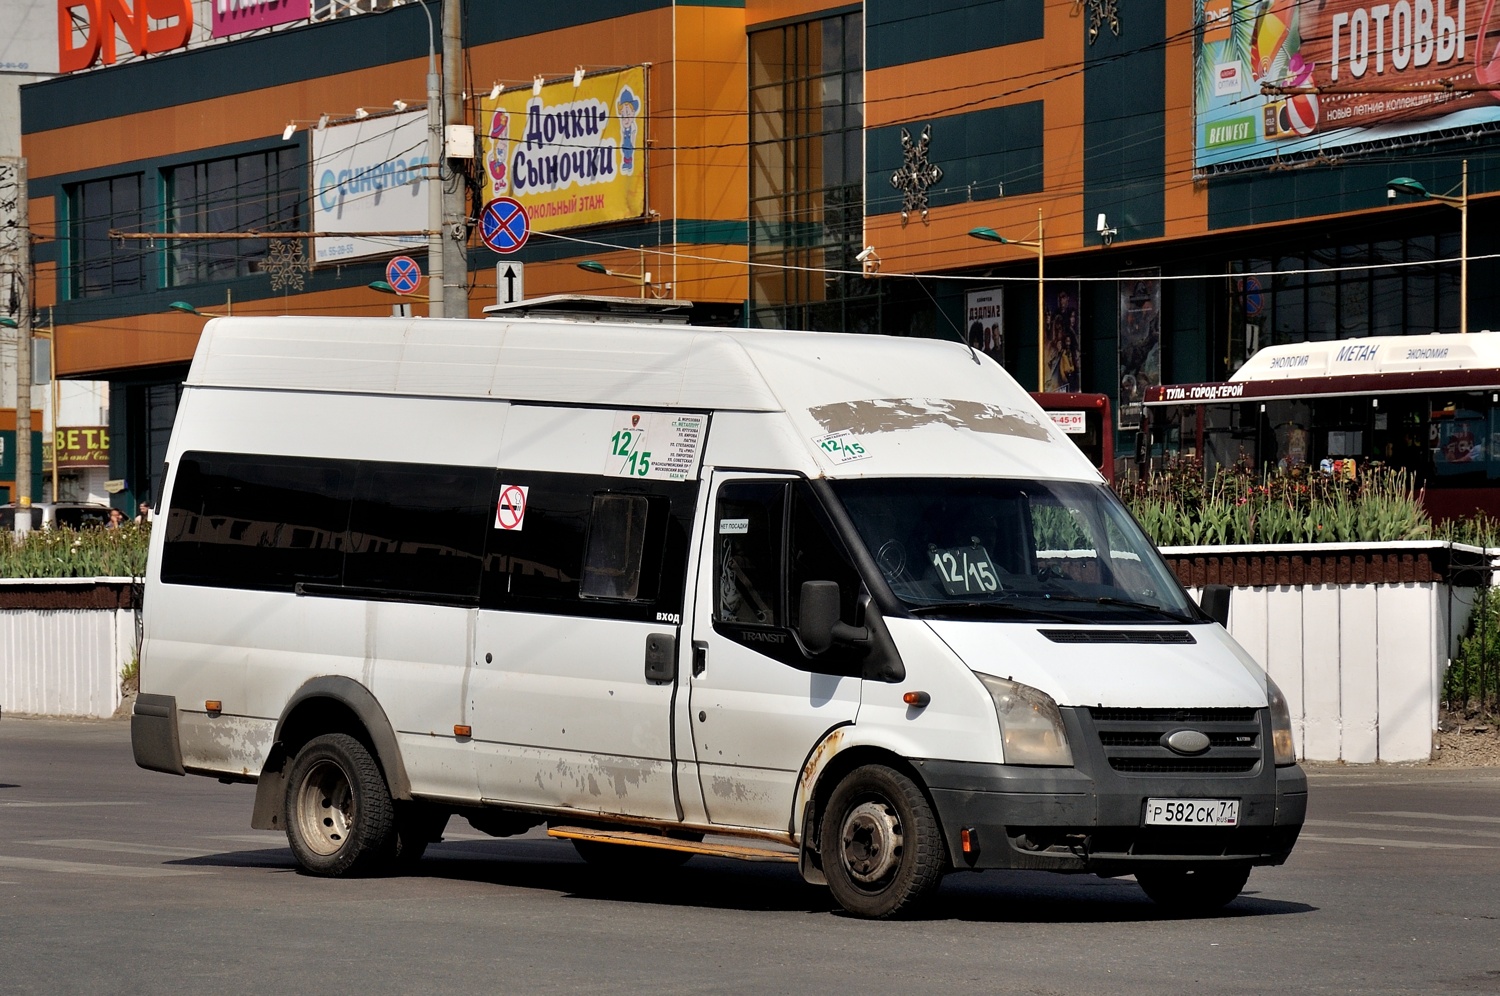 Tula, Nizhegorodets-222702 (Ford Transit) # Р 582 СК 71